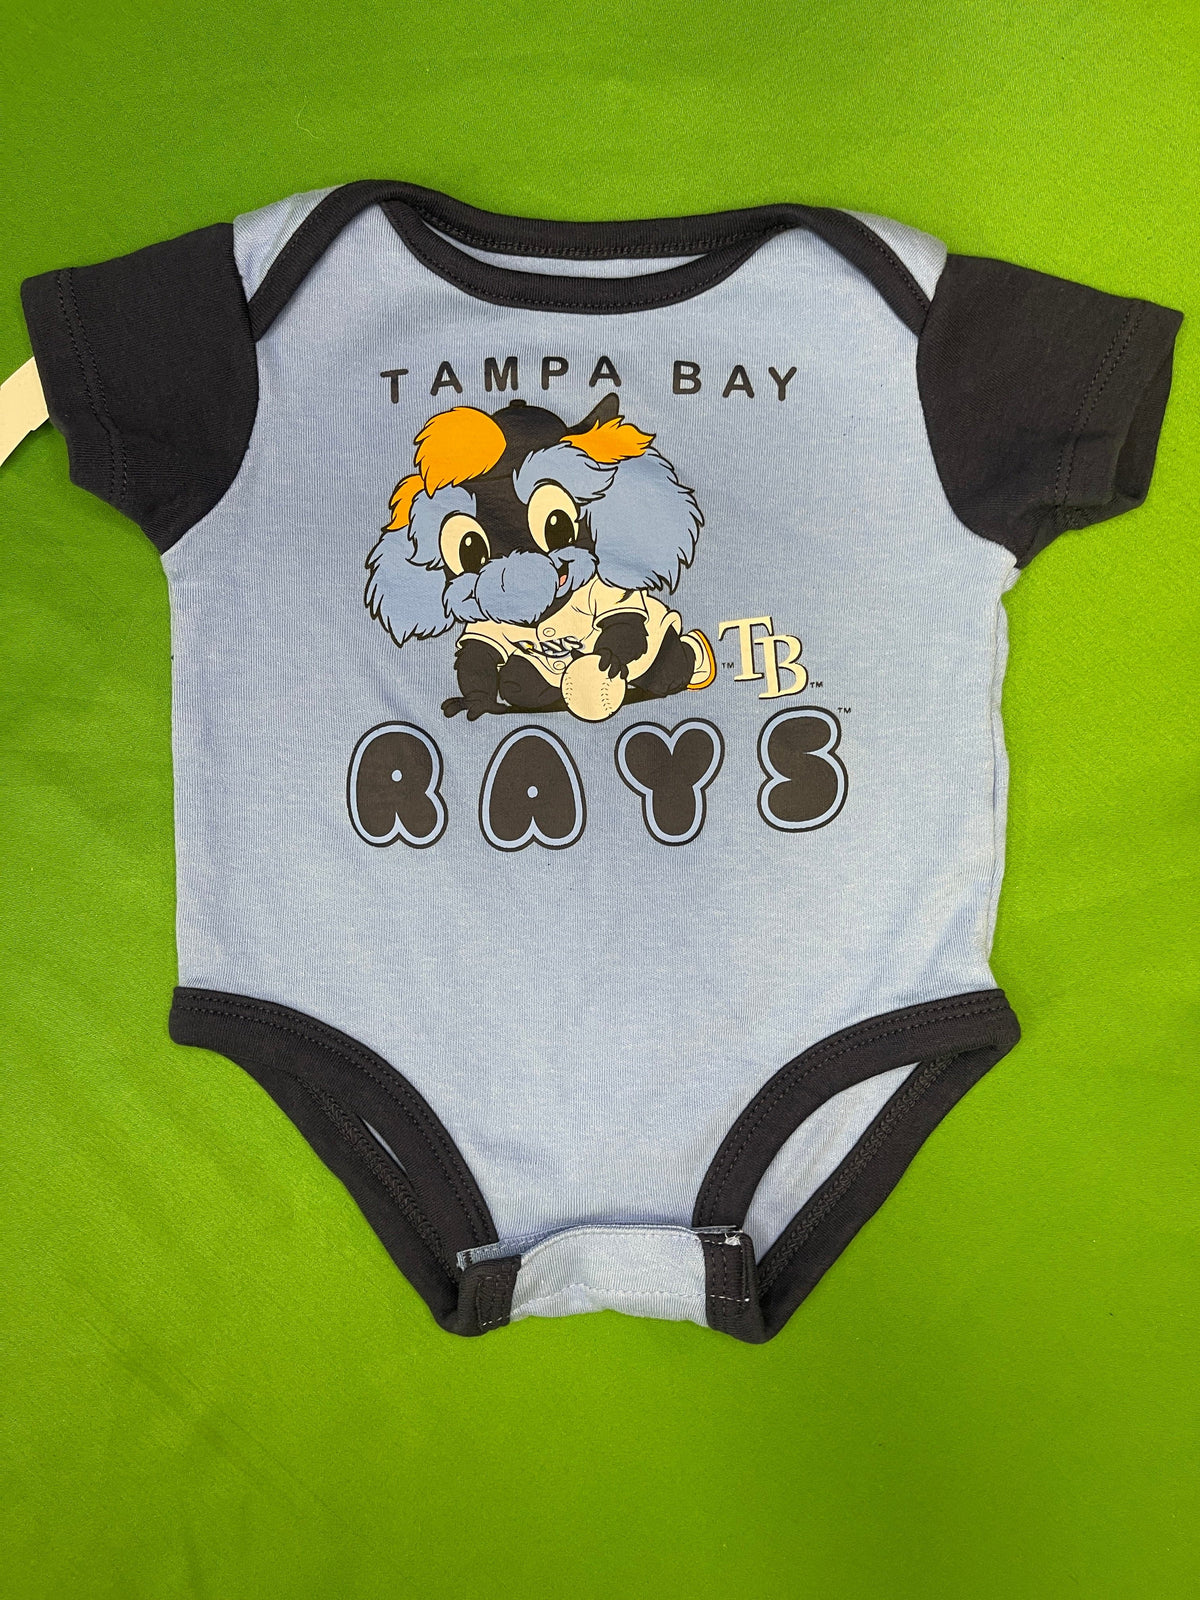 MLB Tampa Bay Rays Infant Baby Bodysuit/Vest Newborn 0-3 Months